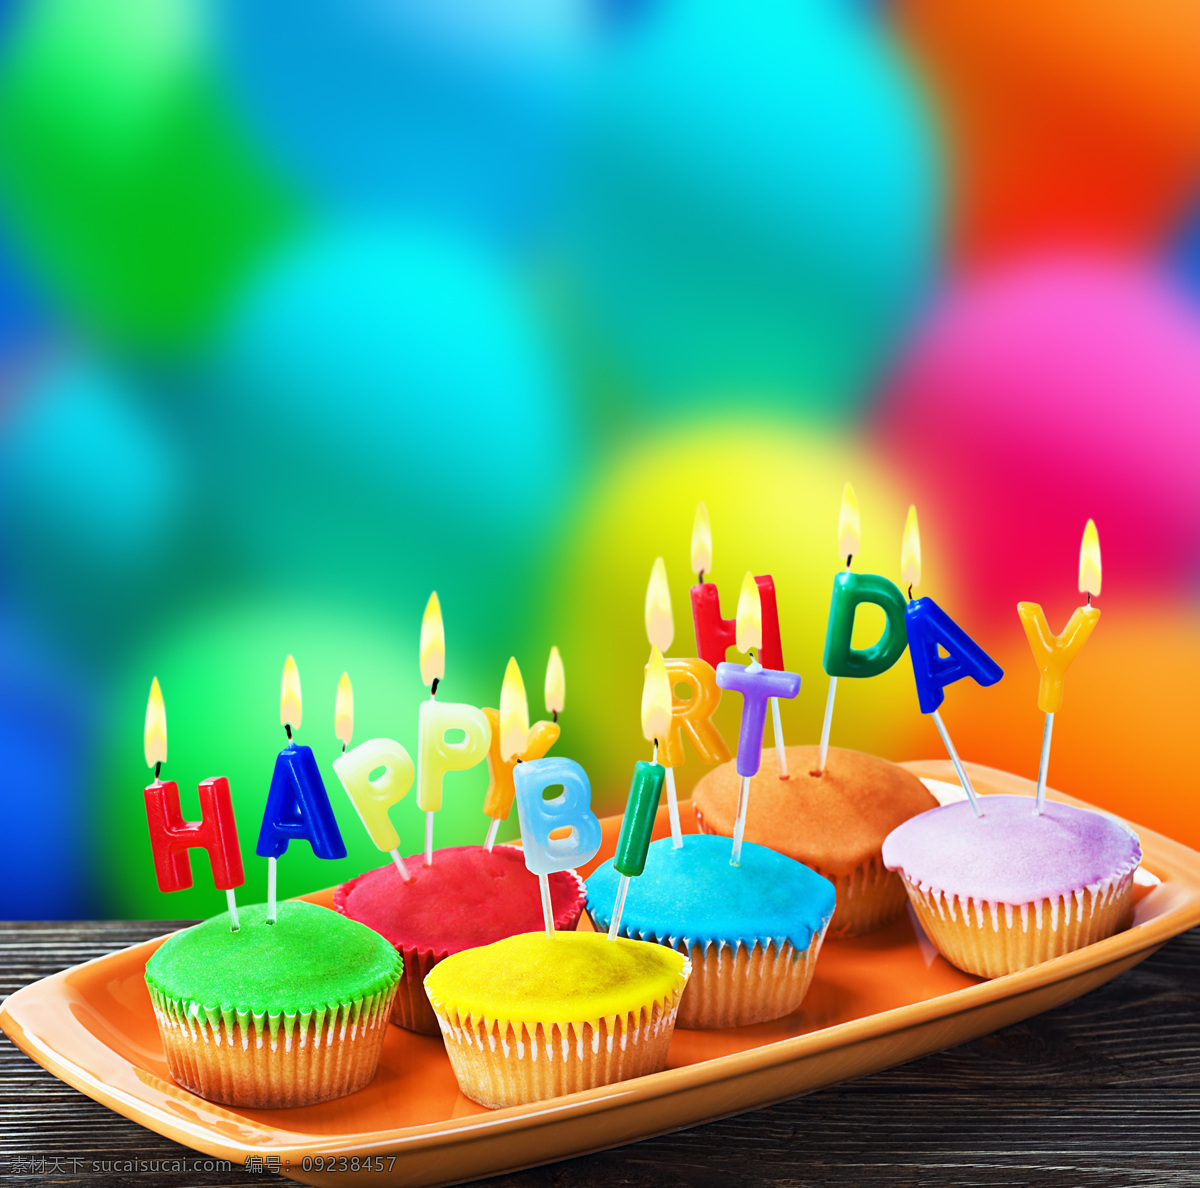 桌子 上 纸 托 蛋糕 气球 梦幻背景 纸托蛋糕 糕点 蜡烛 生日 节日庆典 生活百科